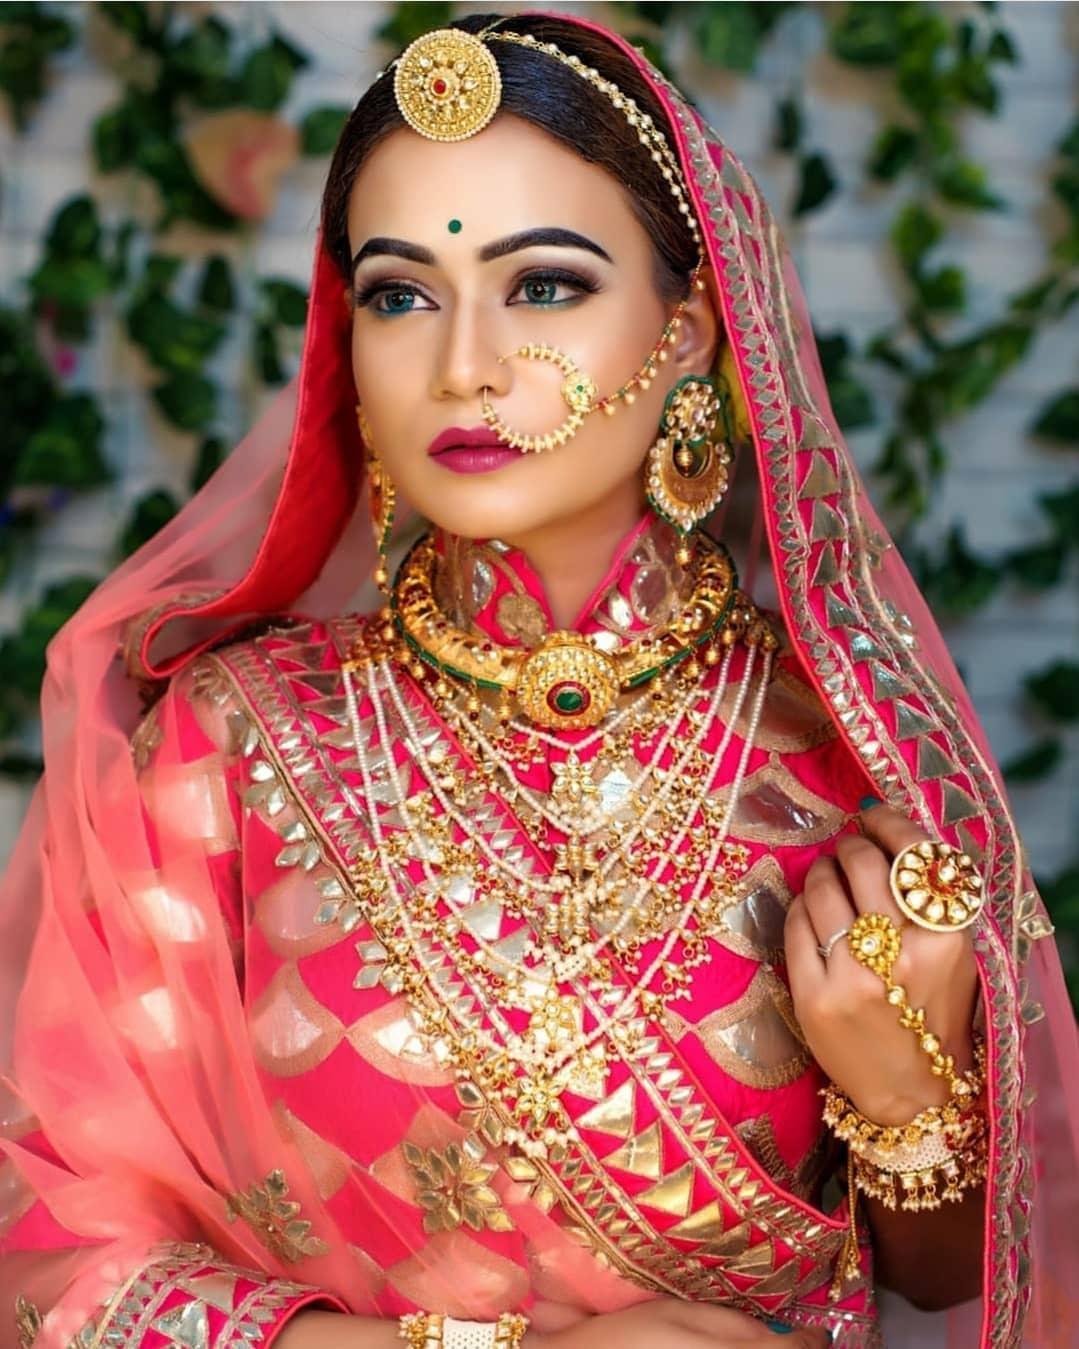 Rajasthani Maang Tikka Styles To Add Royalty